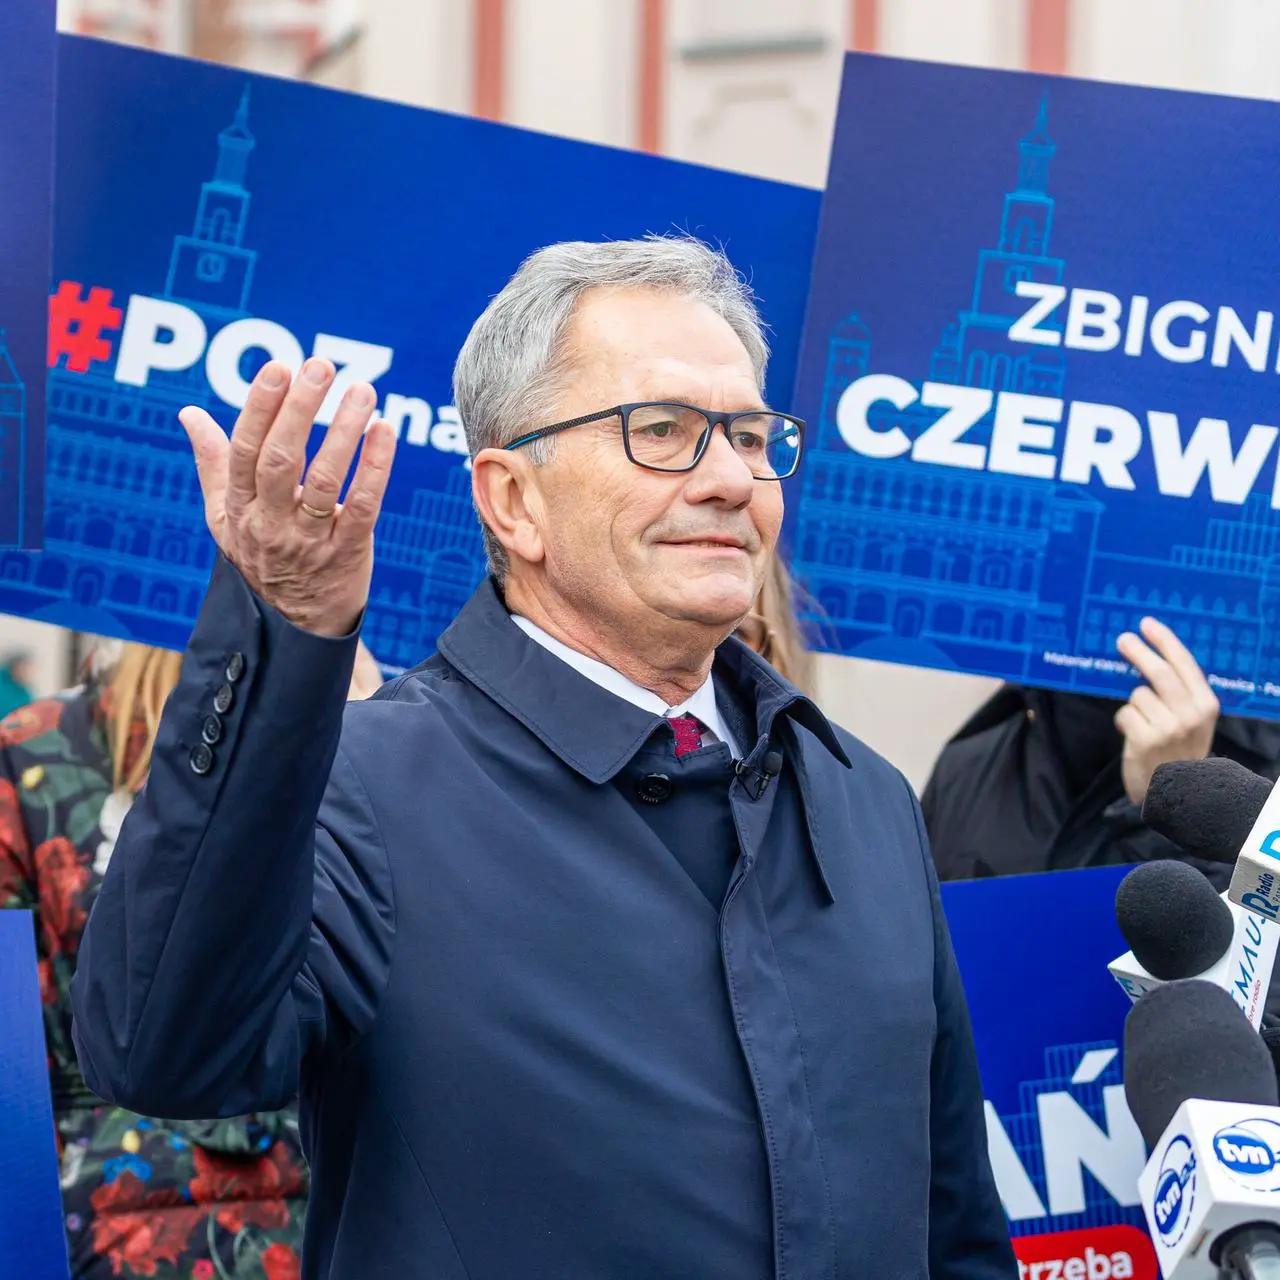 Zbigniew Czerwiński – kandydat PiS na prezydenta Poznania